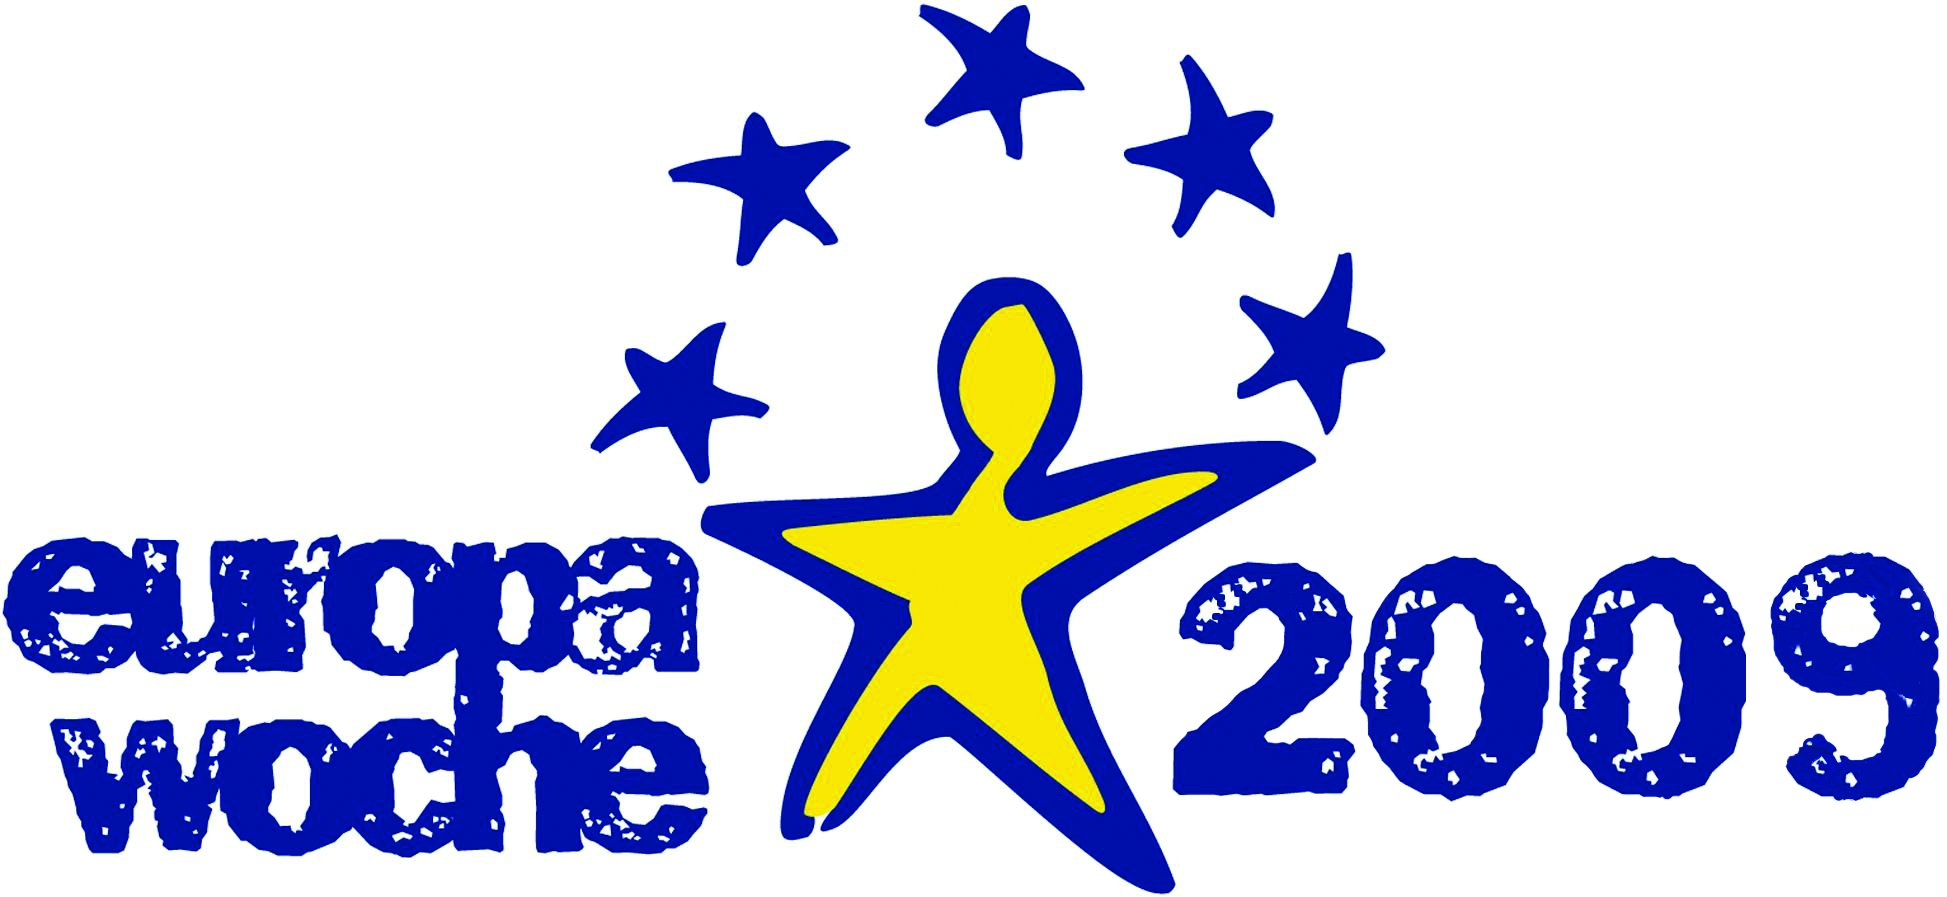 Bild Veranstaltung Veranstaltung Europawahl 2009